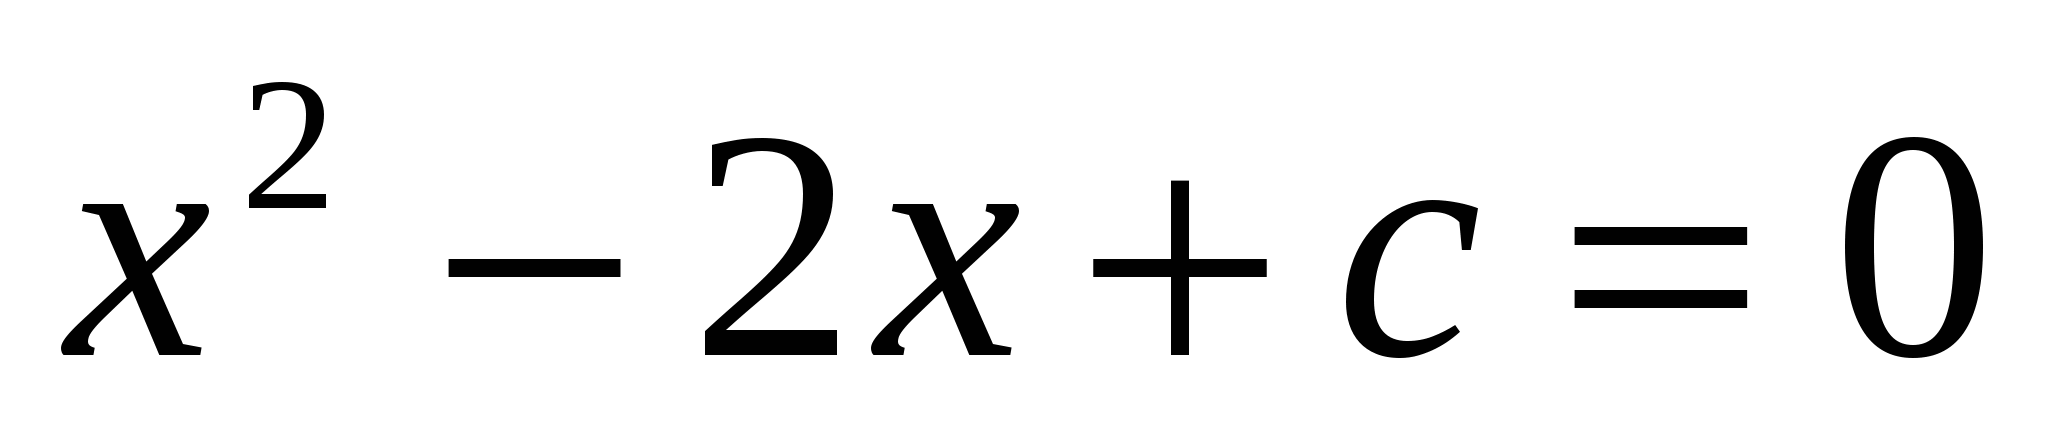 Программа элективного курса по математике для 9 классов на тему «Уравнения второй степени с параметром»